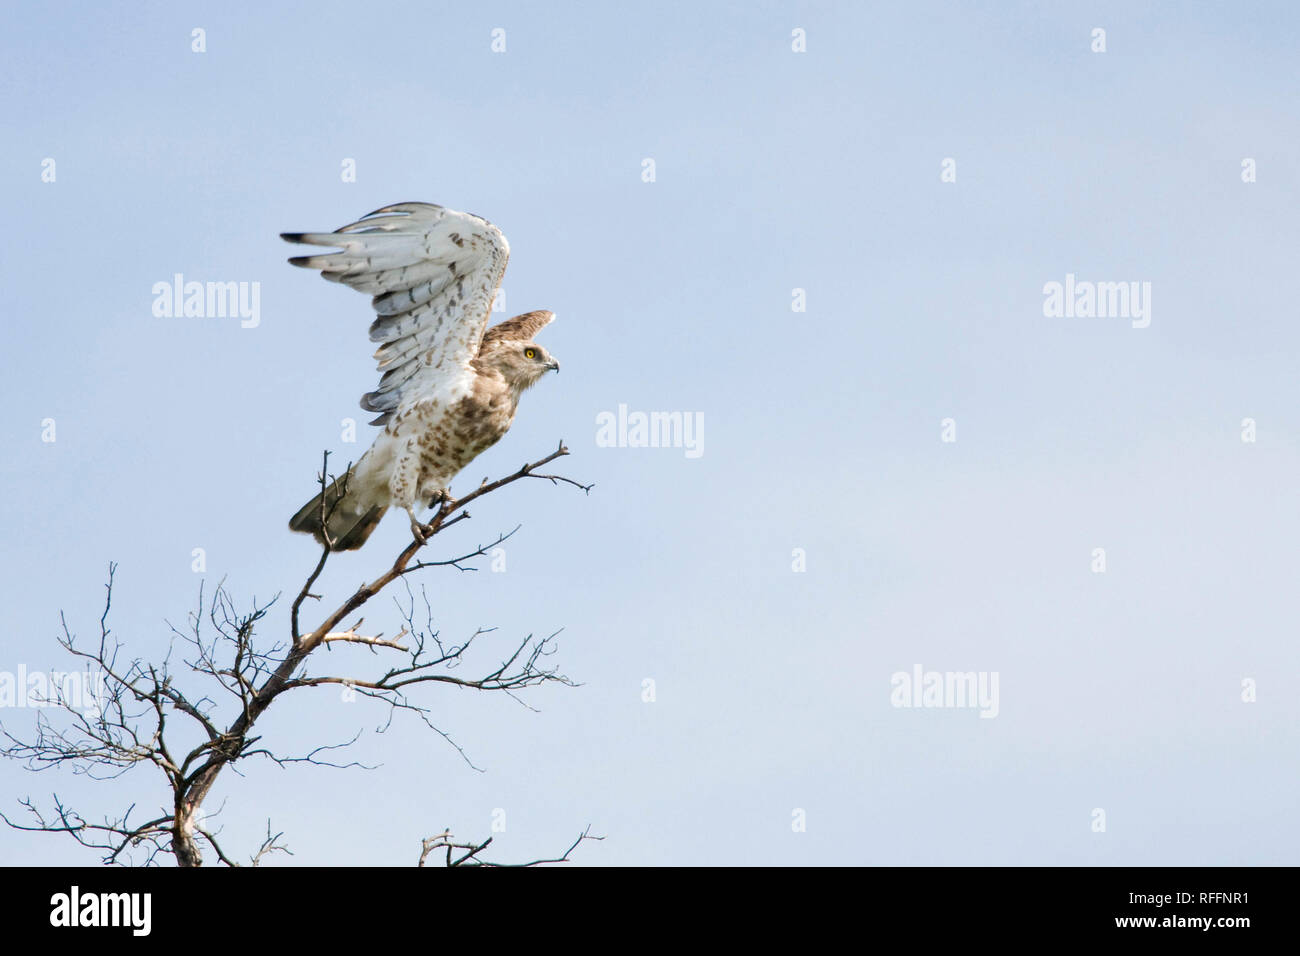 El águila serpiente de punta corta (Circaetus gallicus) esparciendo sus alas sobre el árbol. Foto de stock